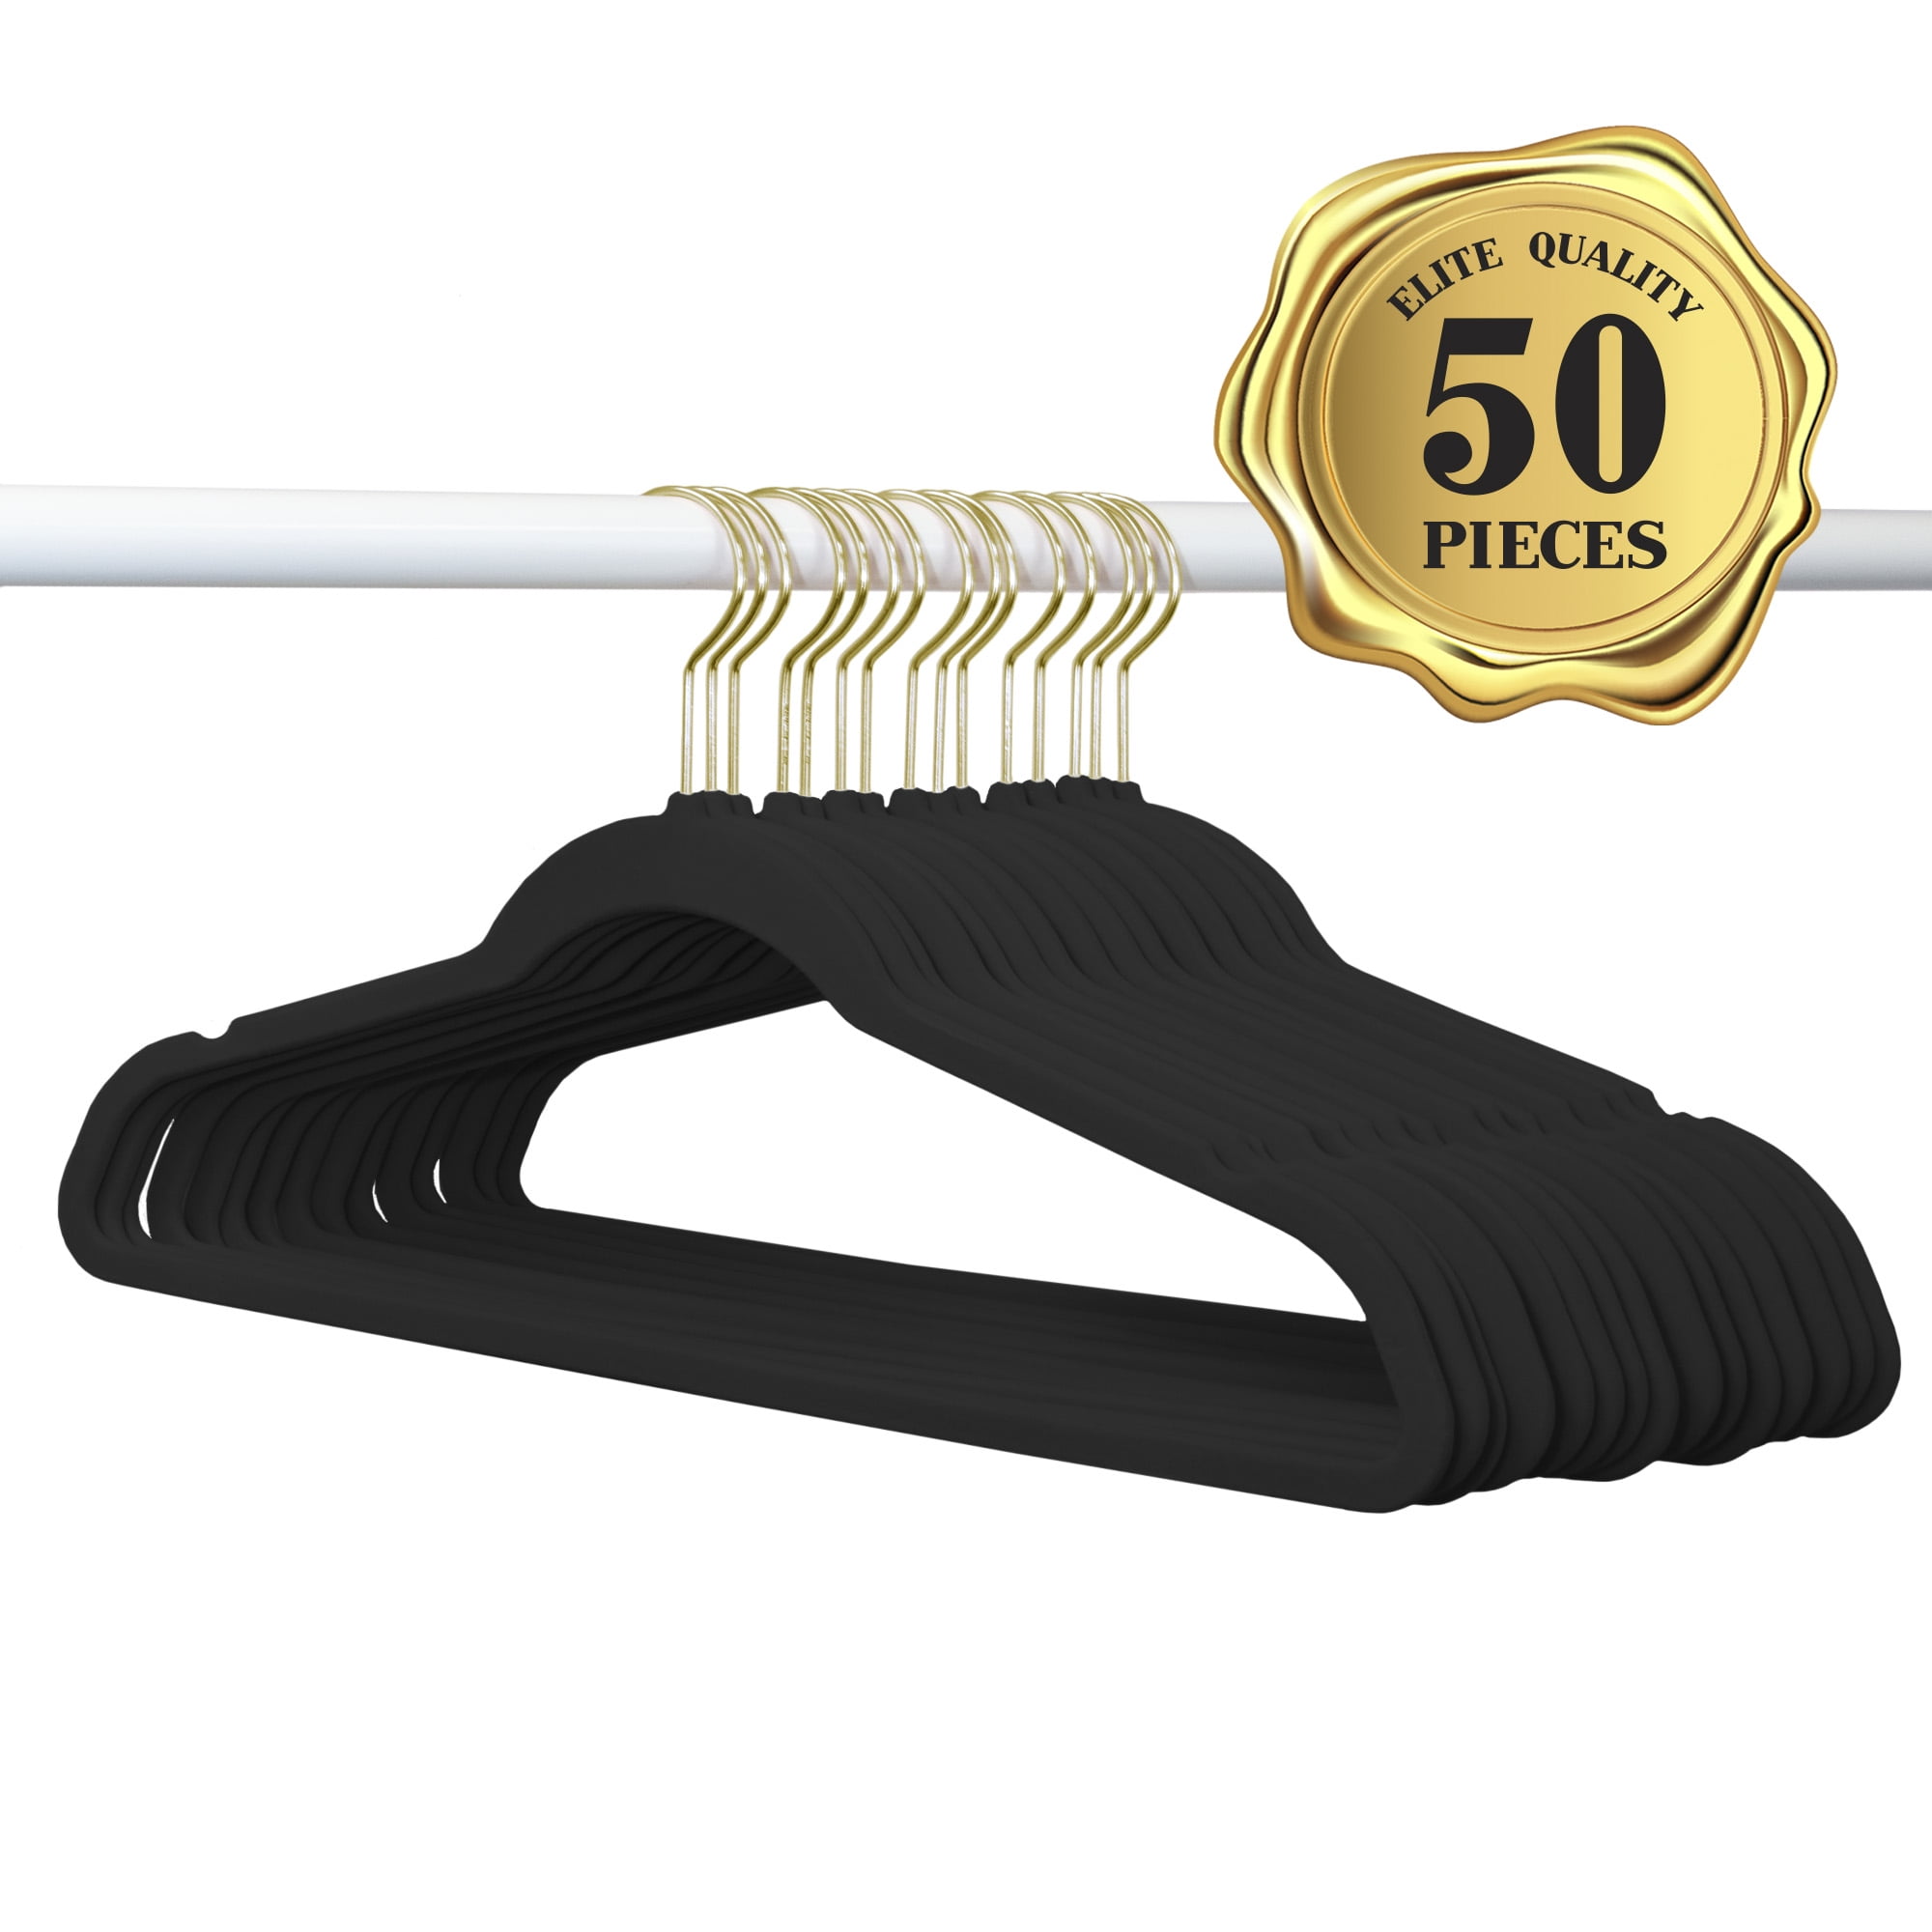 Zober Velvet Hangers 50 Pack - Heavy Duty Black Hangers for Coats